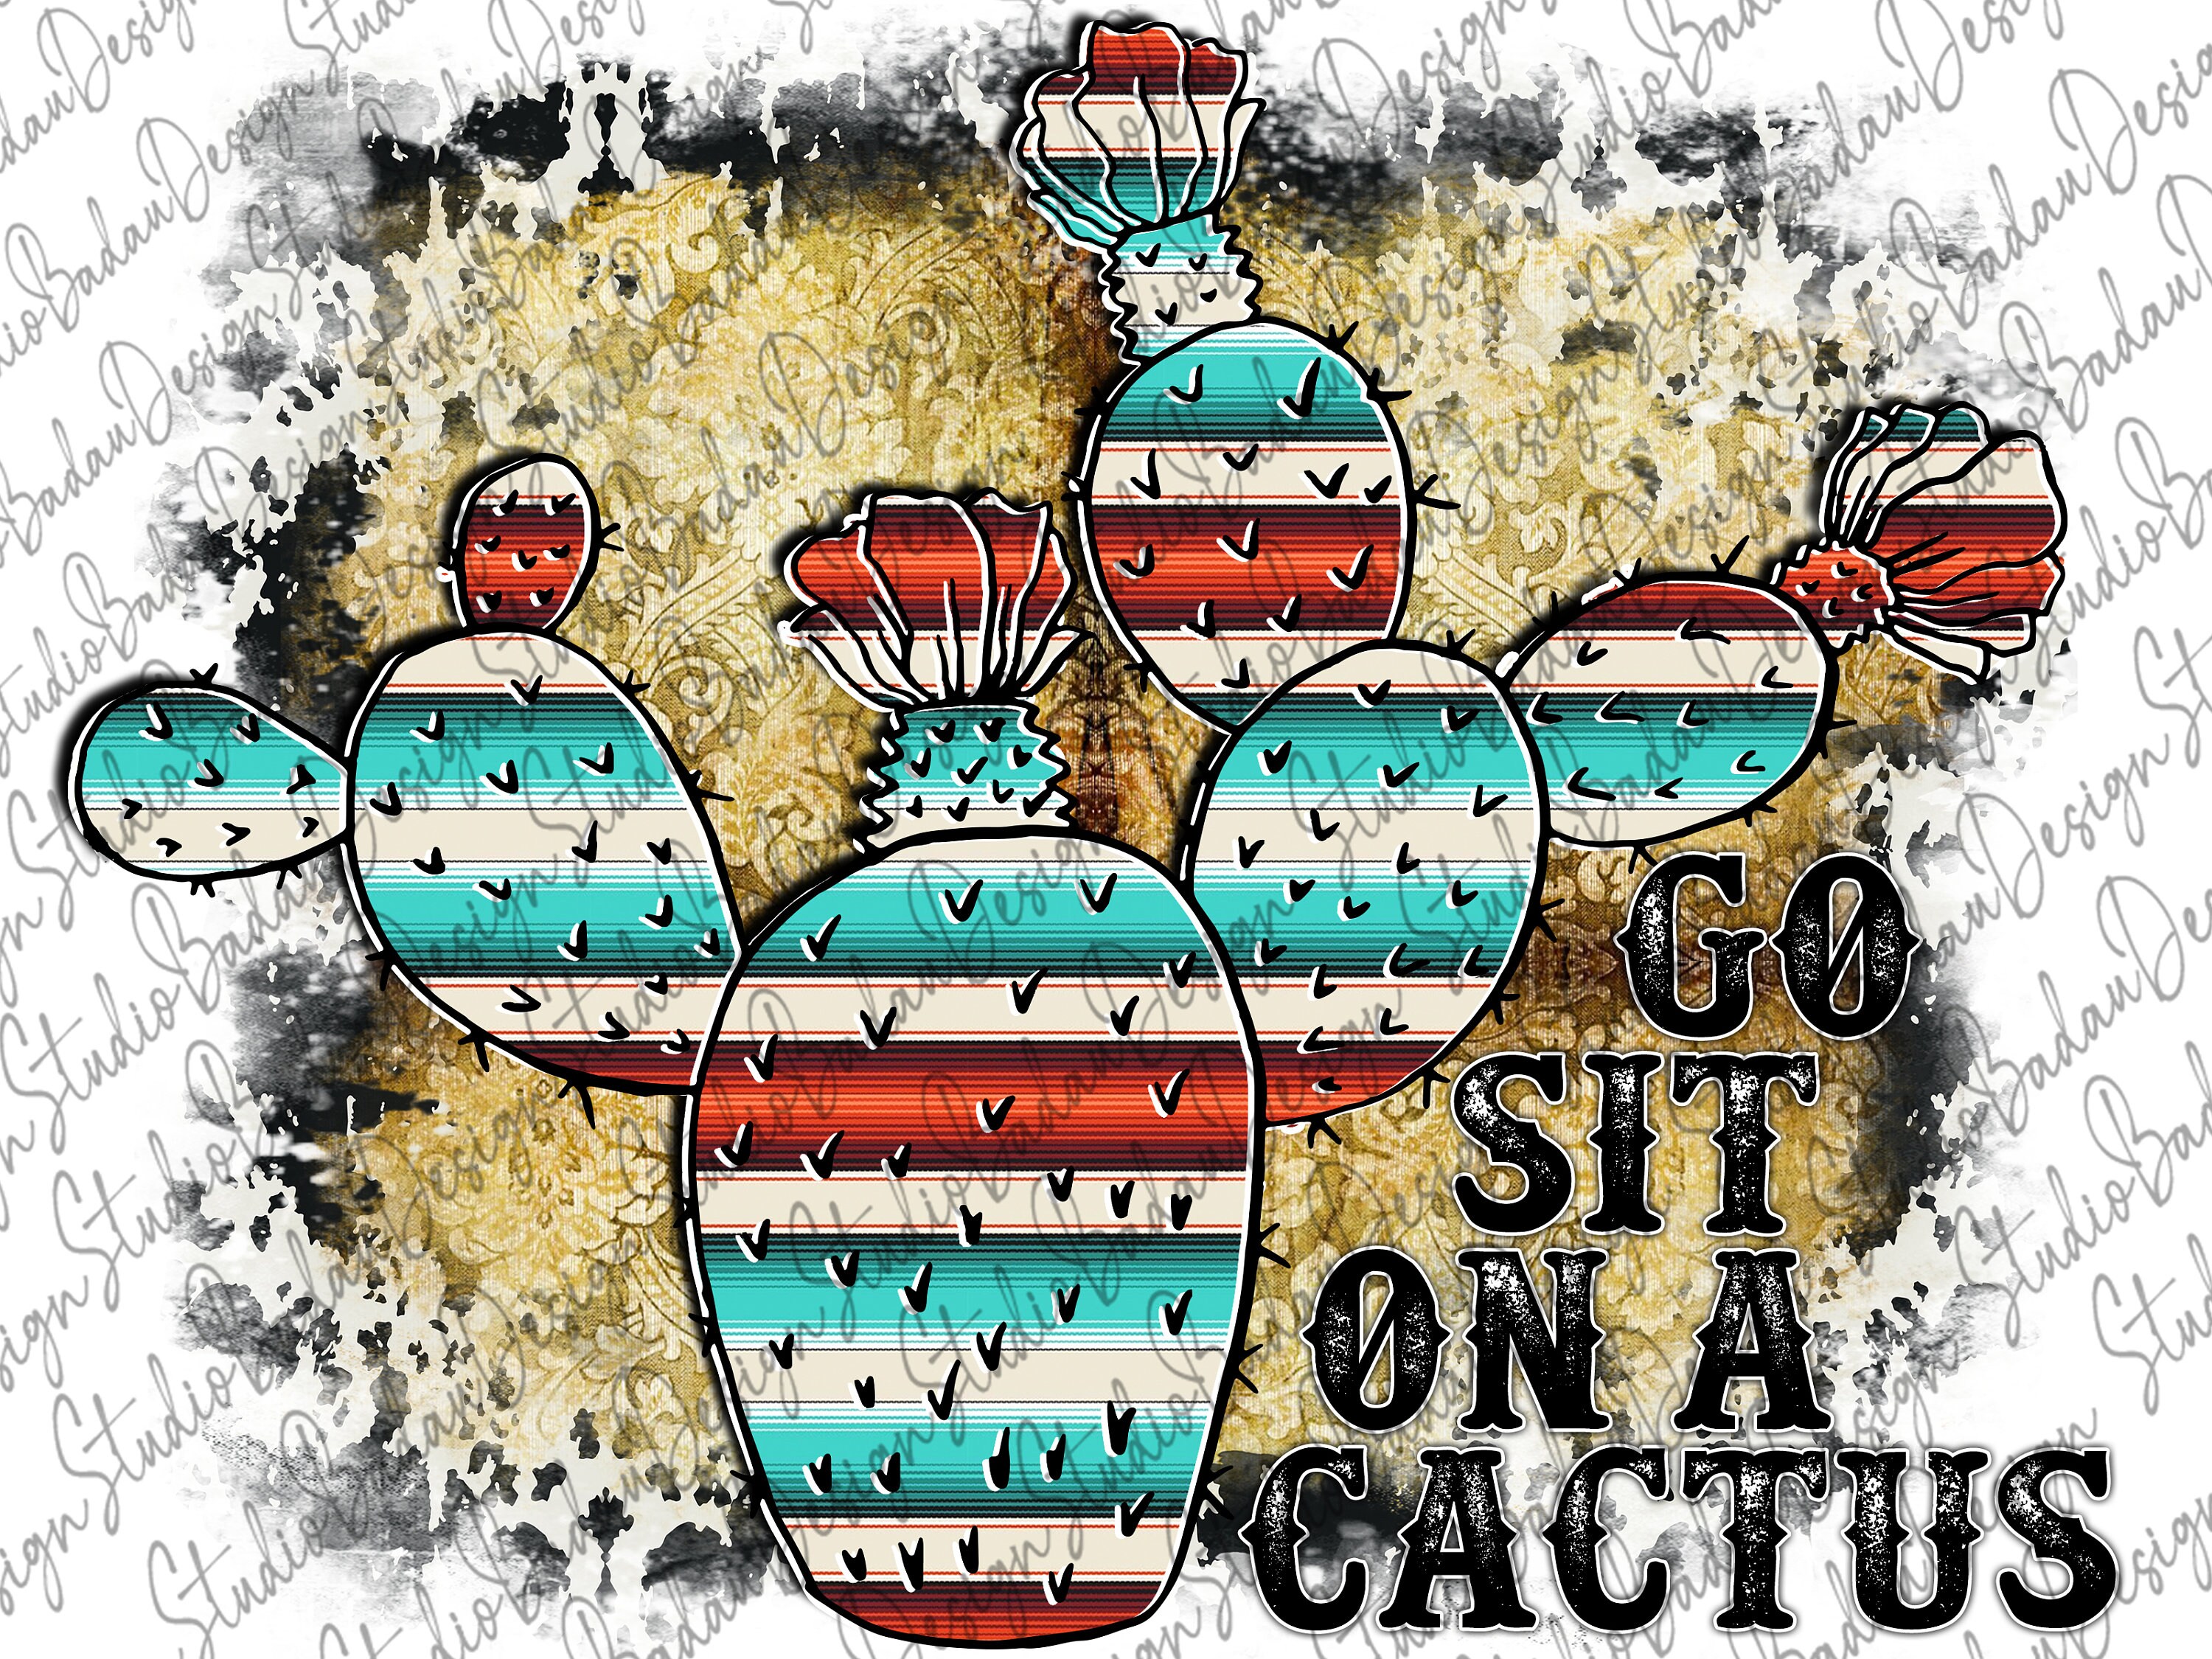 Cowhide Go Sit On a Cactus PNG File Serape Sublimation Design PNG Digital Download PNG Sublimation Designs Cactus Png